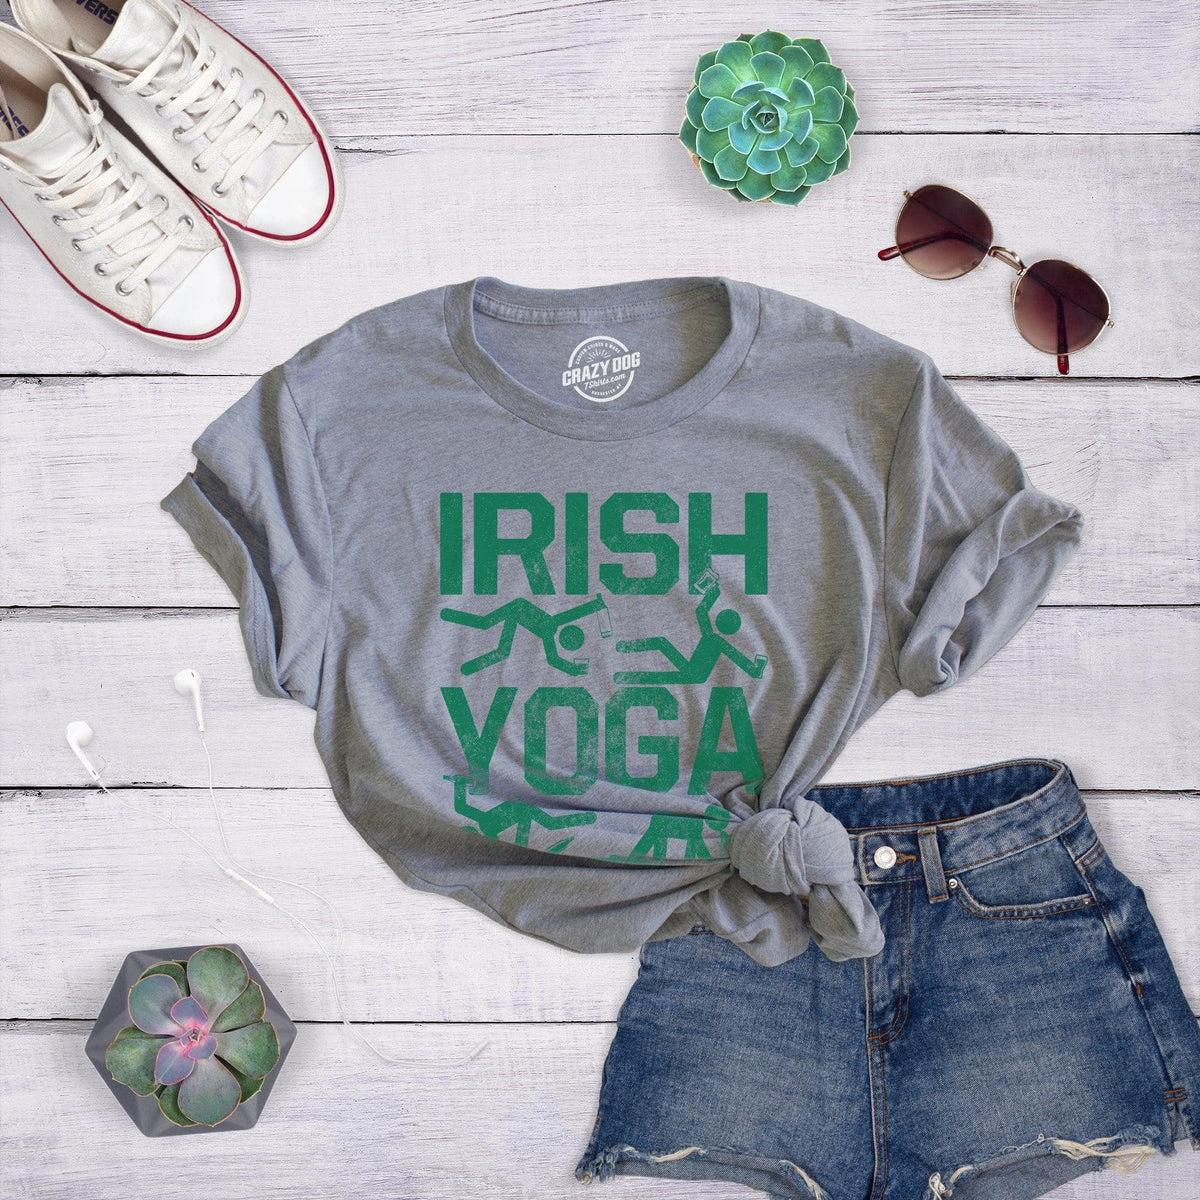 Irish Yoga Women's T Shirt - Crazy Dog T-Shirts